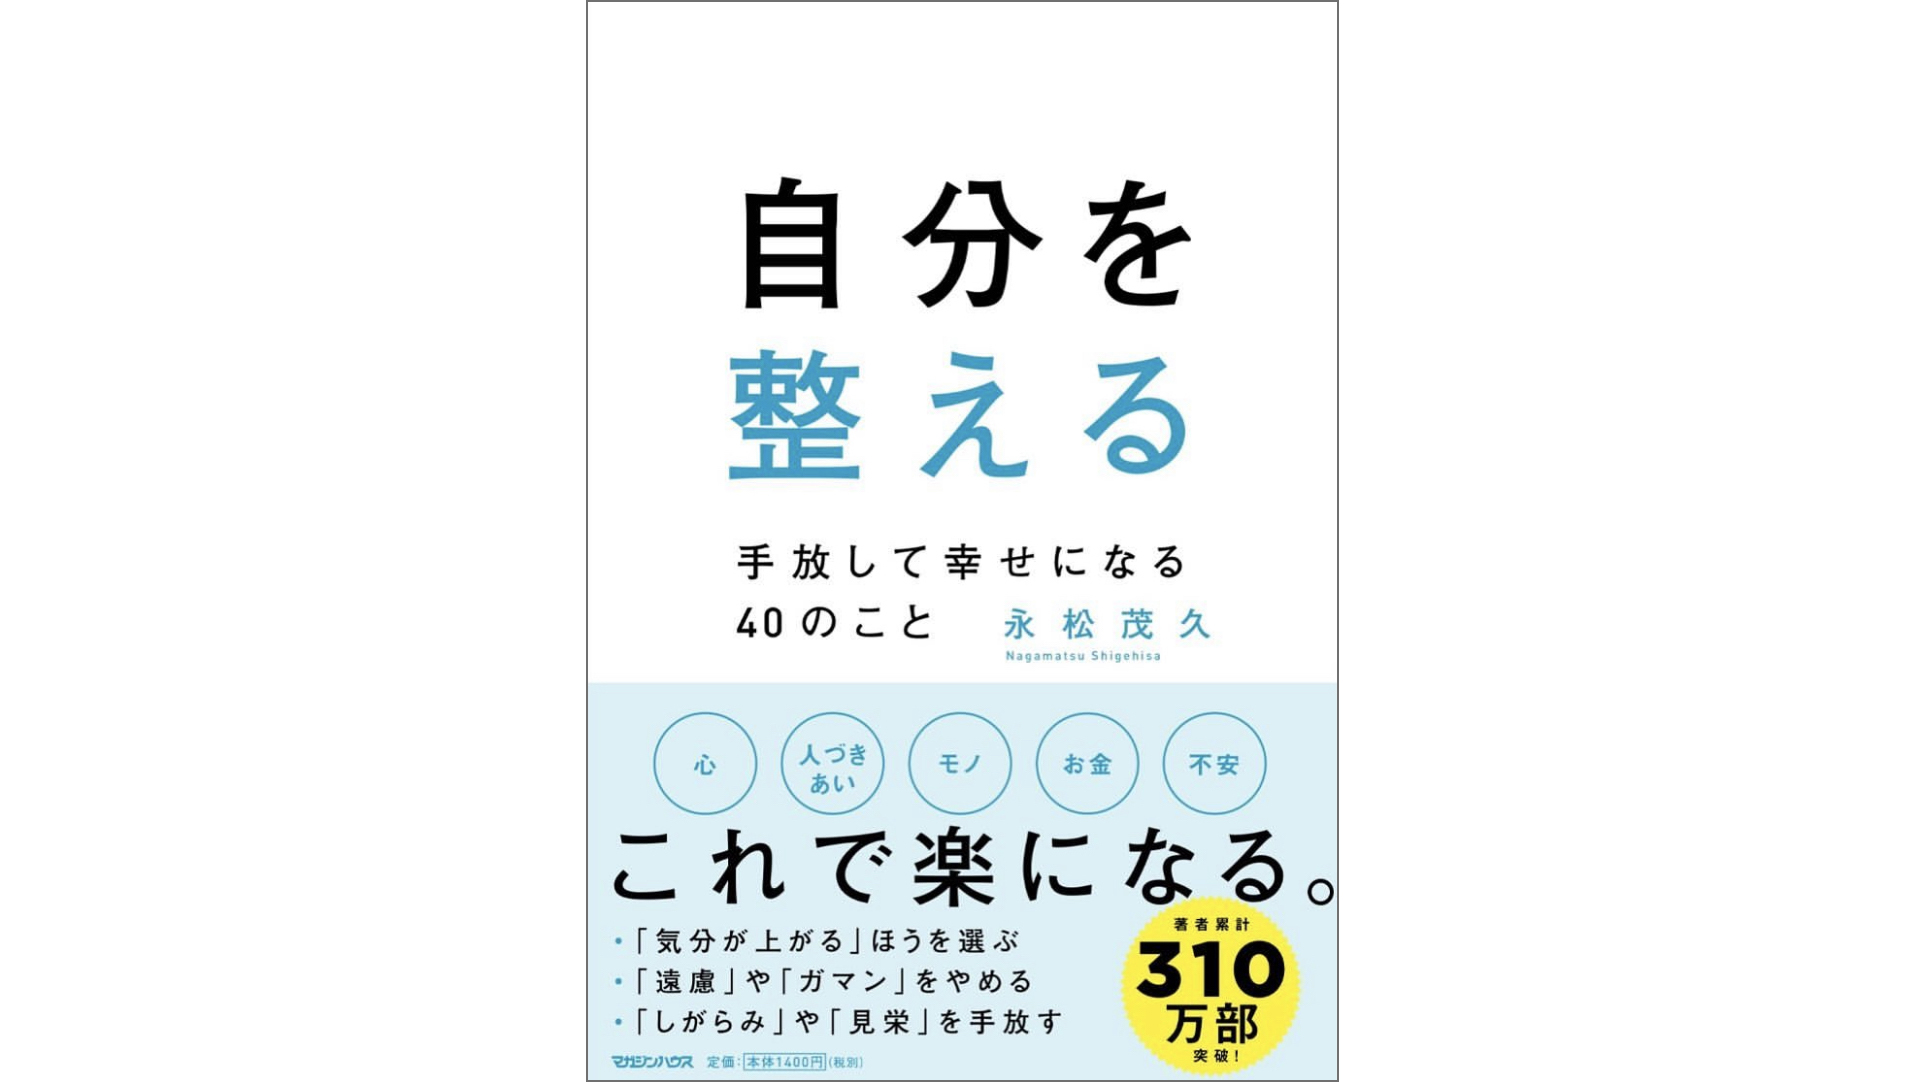 永松茂久(ながまつしげひさ)さんが書籍『自分を整える 〜手放して幸せになる40のこと〜』が発売開始